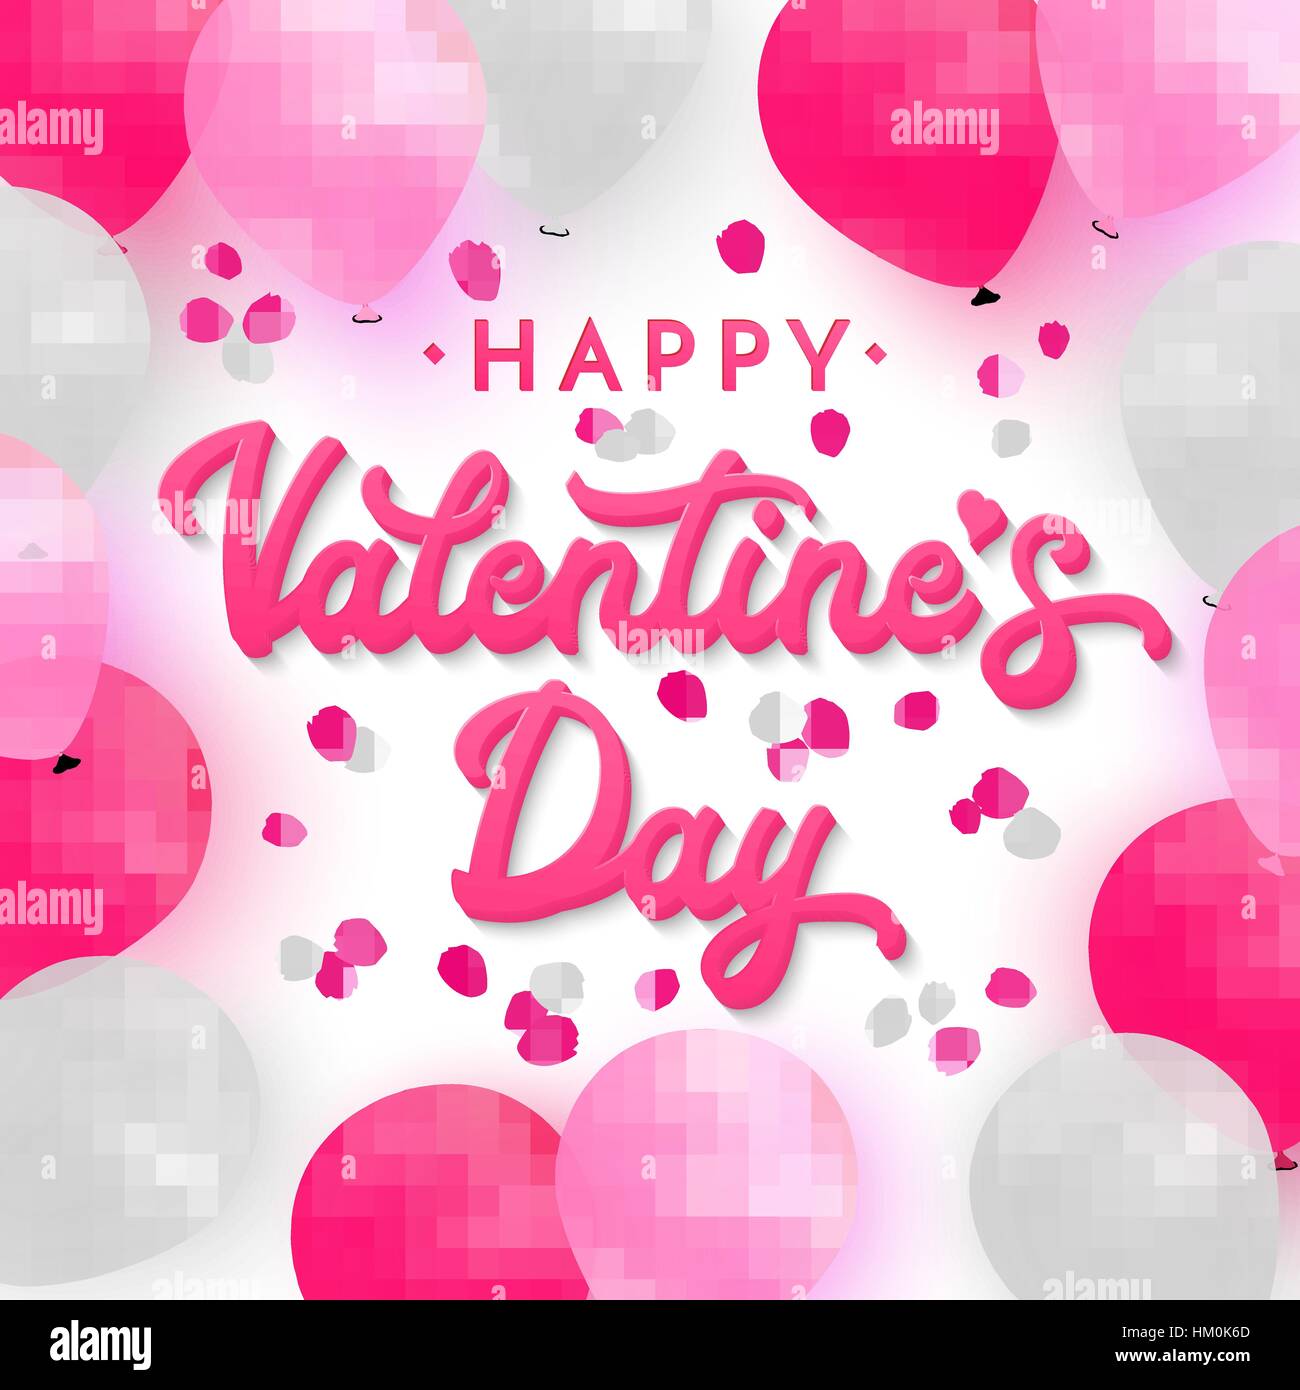 Carte Saint Valentin avec lettrage 3D à main rose sur fond romantique avec texte blanc, rose et rose foncé sur fond de ballons réaliste avec des pétales de rose. Illustration vecteur de polices. Illustration de Vecteur